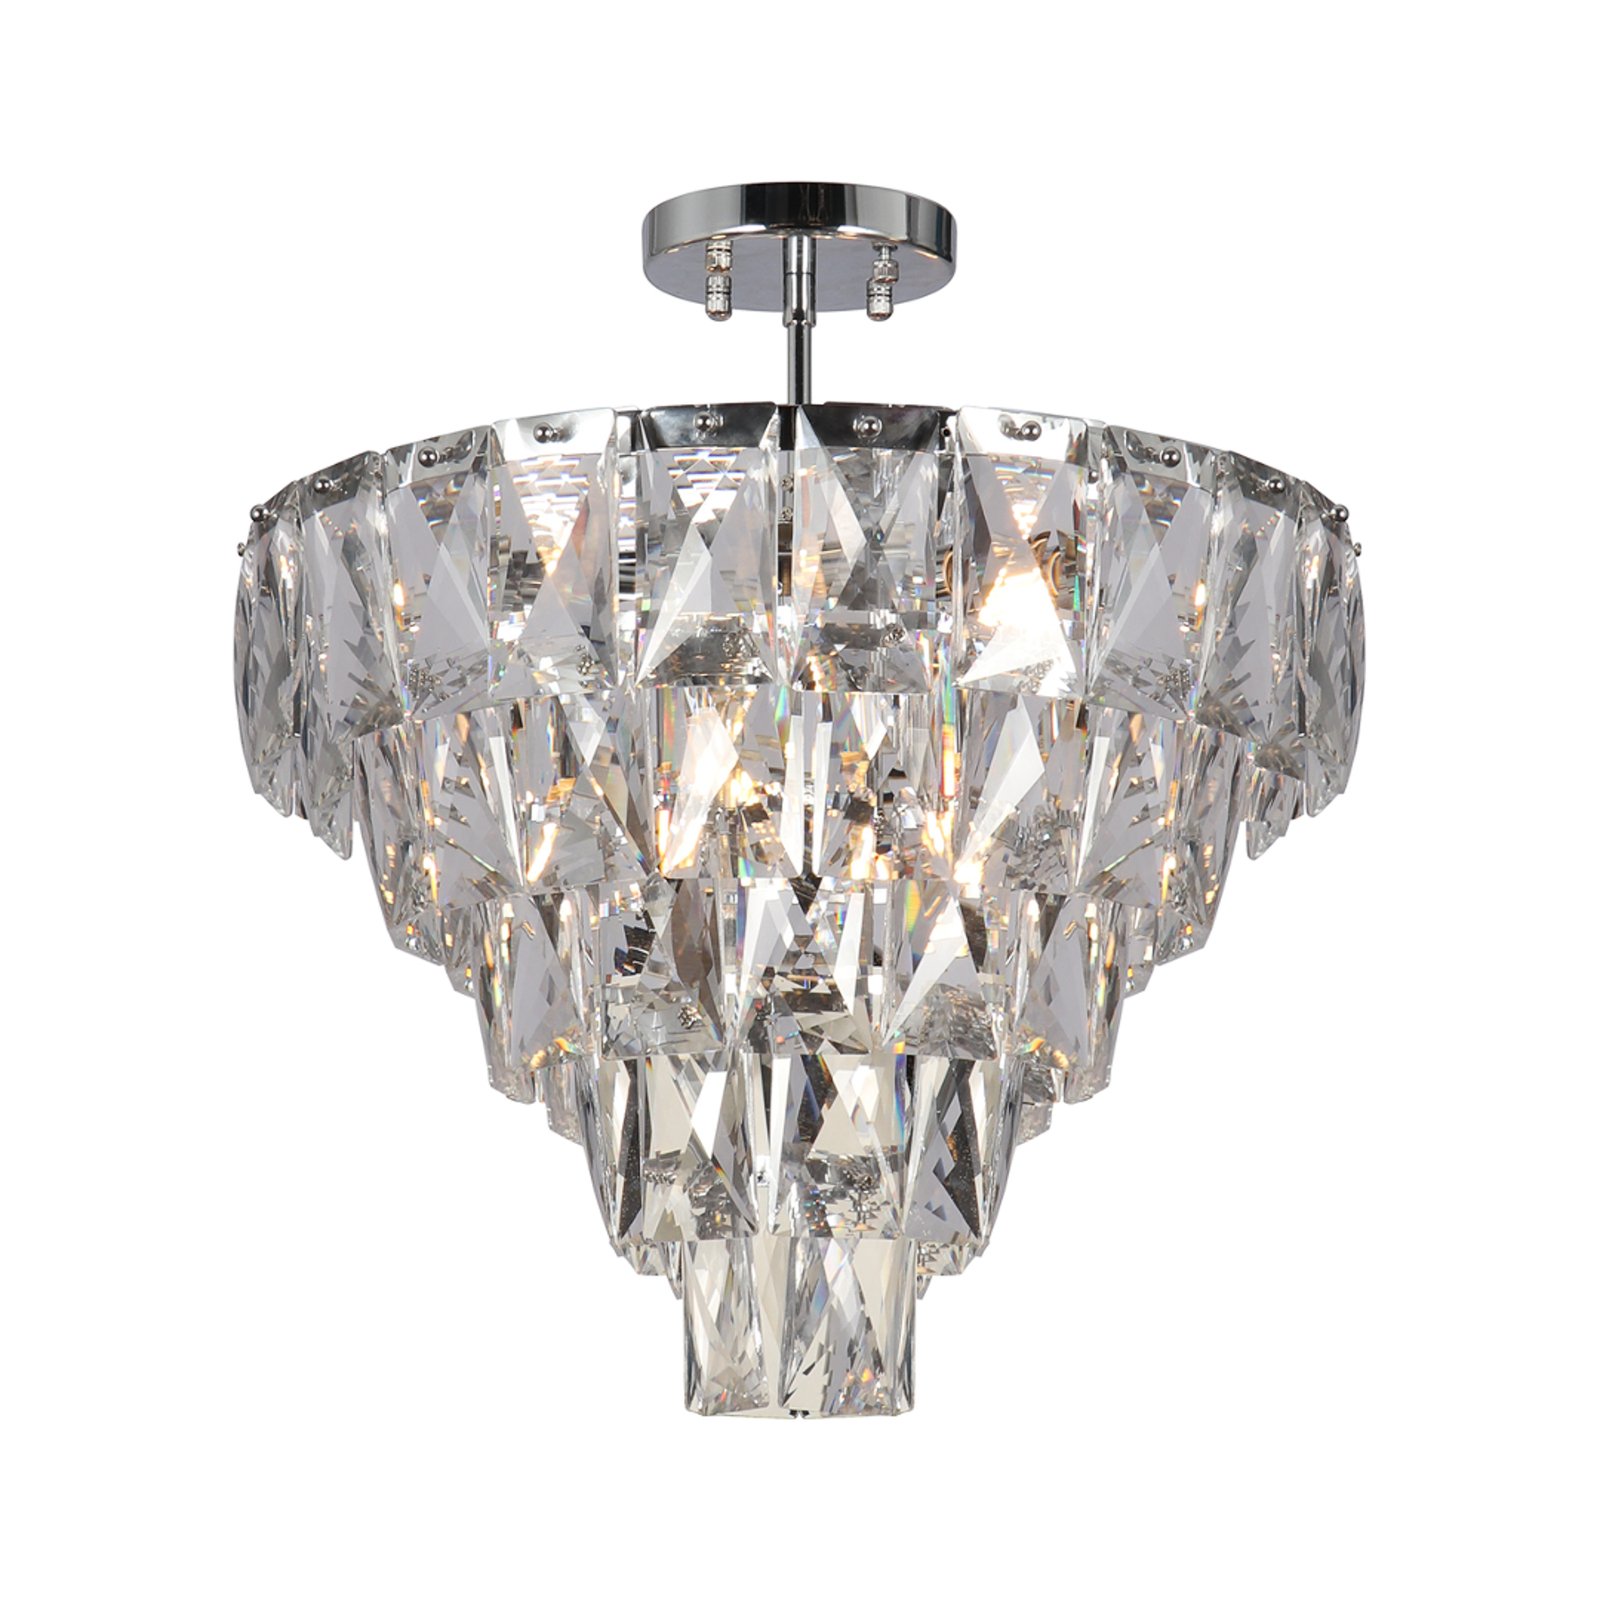 Plafondlamp Chelsea metaal chroomkleurige glazen kristallen Ø 50 cm